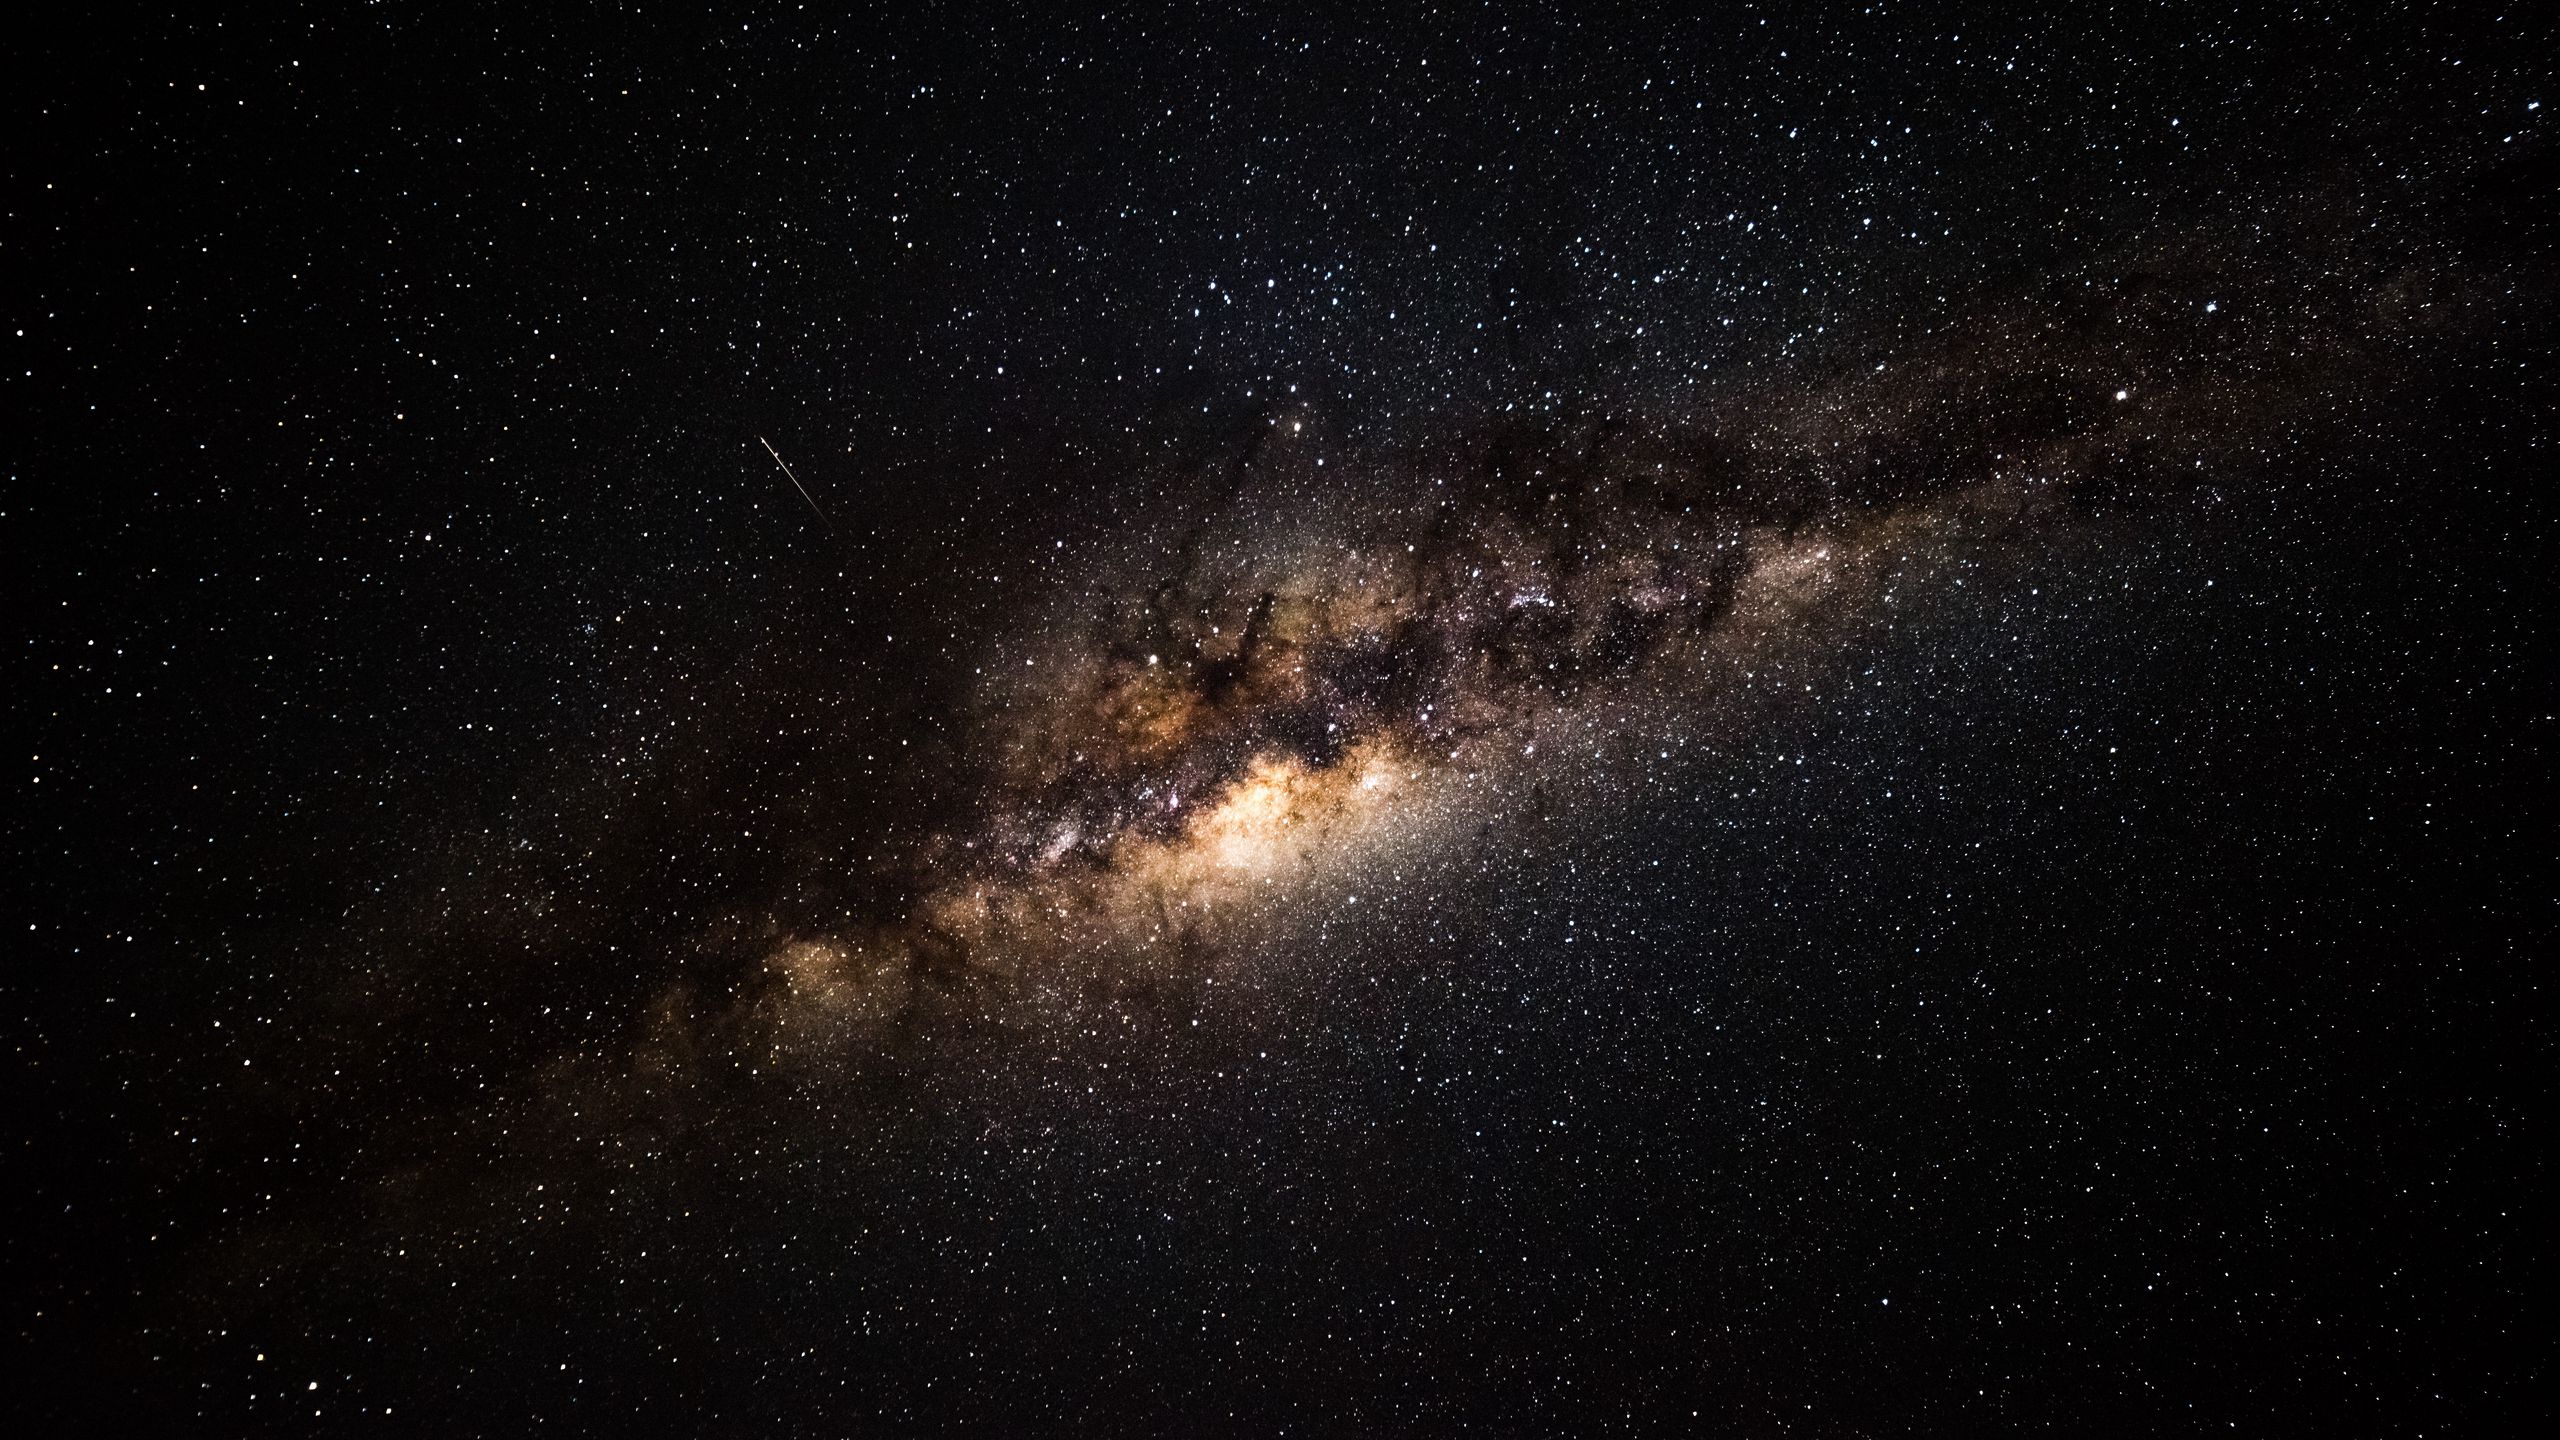 Thiên đường không gian xuất hiện trên màn hình của bạn với bức hình nền Thiên Ngân với độ phân giải 2560x1440 này. Những hình ảnh tuyệt đẹp của Thiên Ngân khiến bạn cảm thấy như đang lạc vào một vẻ đẹp vô tận. Hãy tận hưởng bức hình nền Milky Way này và trải nghiệm những cảm xúc tuyệt vời nhất của vũ trụ.